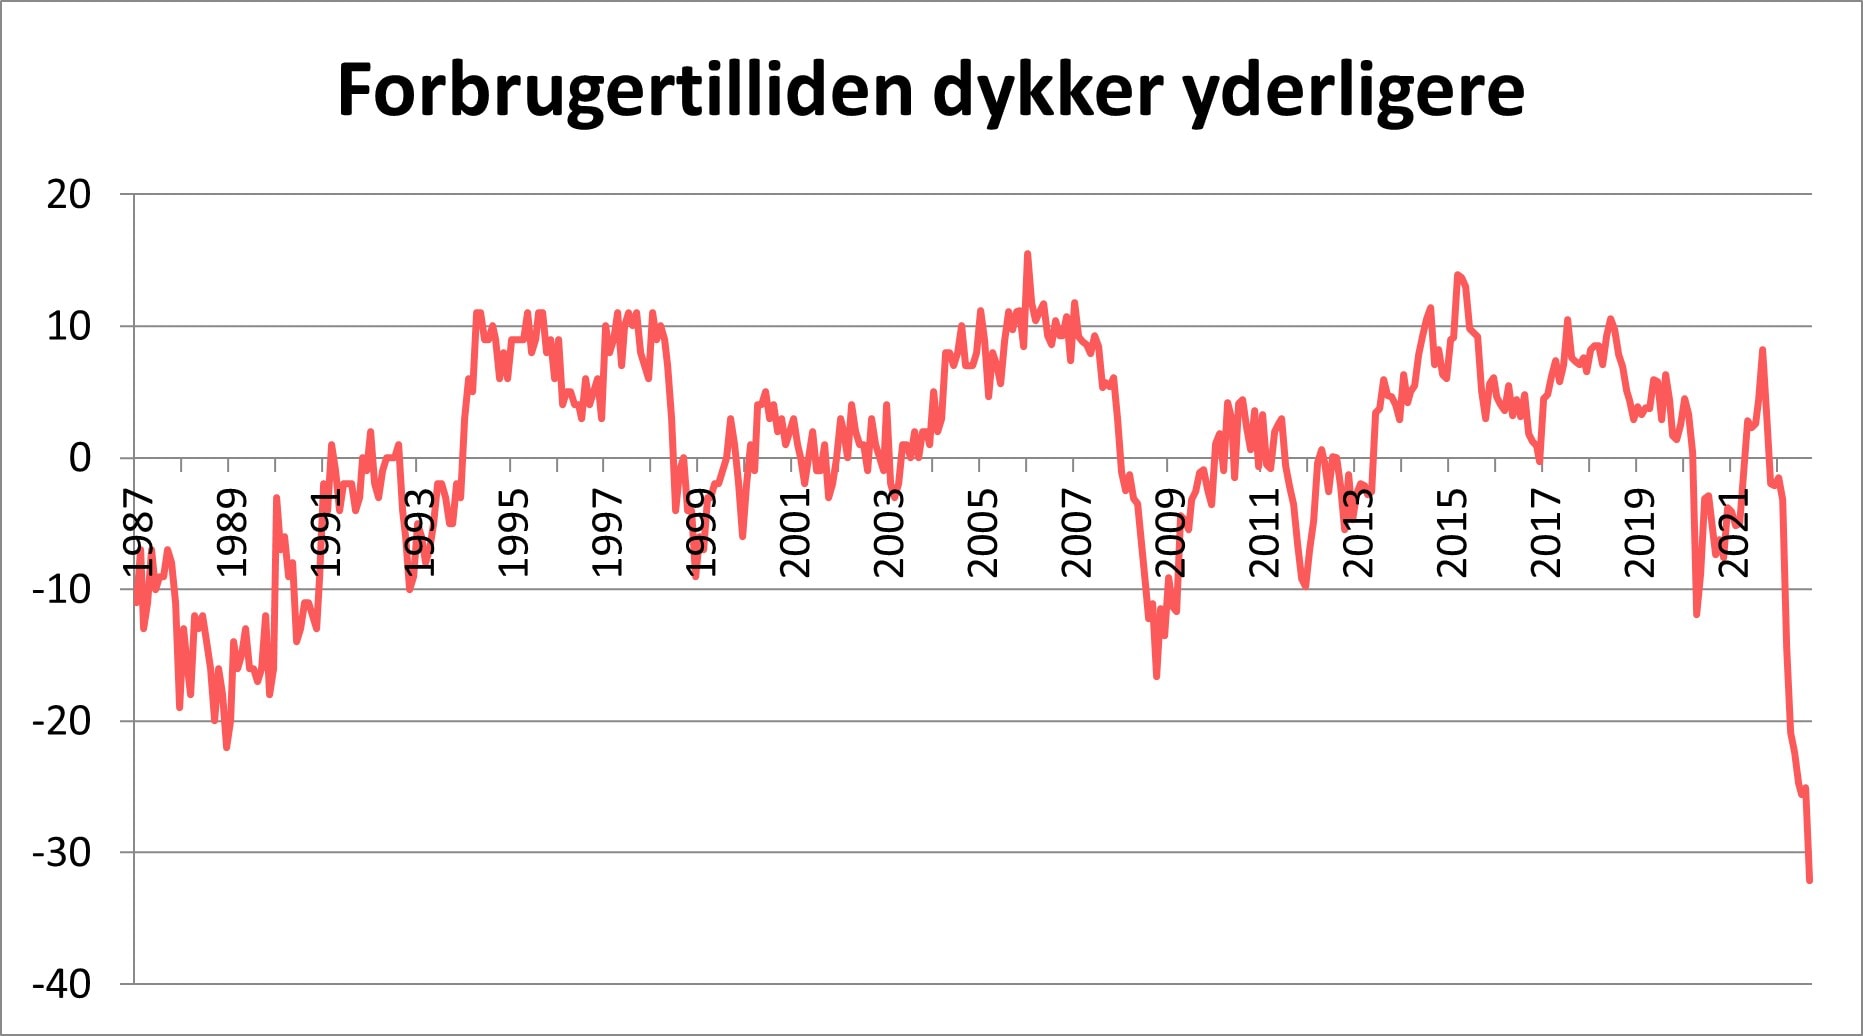  Forbrugertilliden i nyt historisk lavpunkt viser grafen fra 1987 og frem til 2021